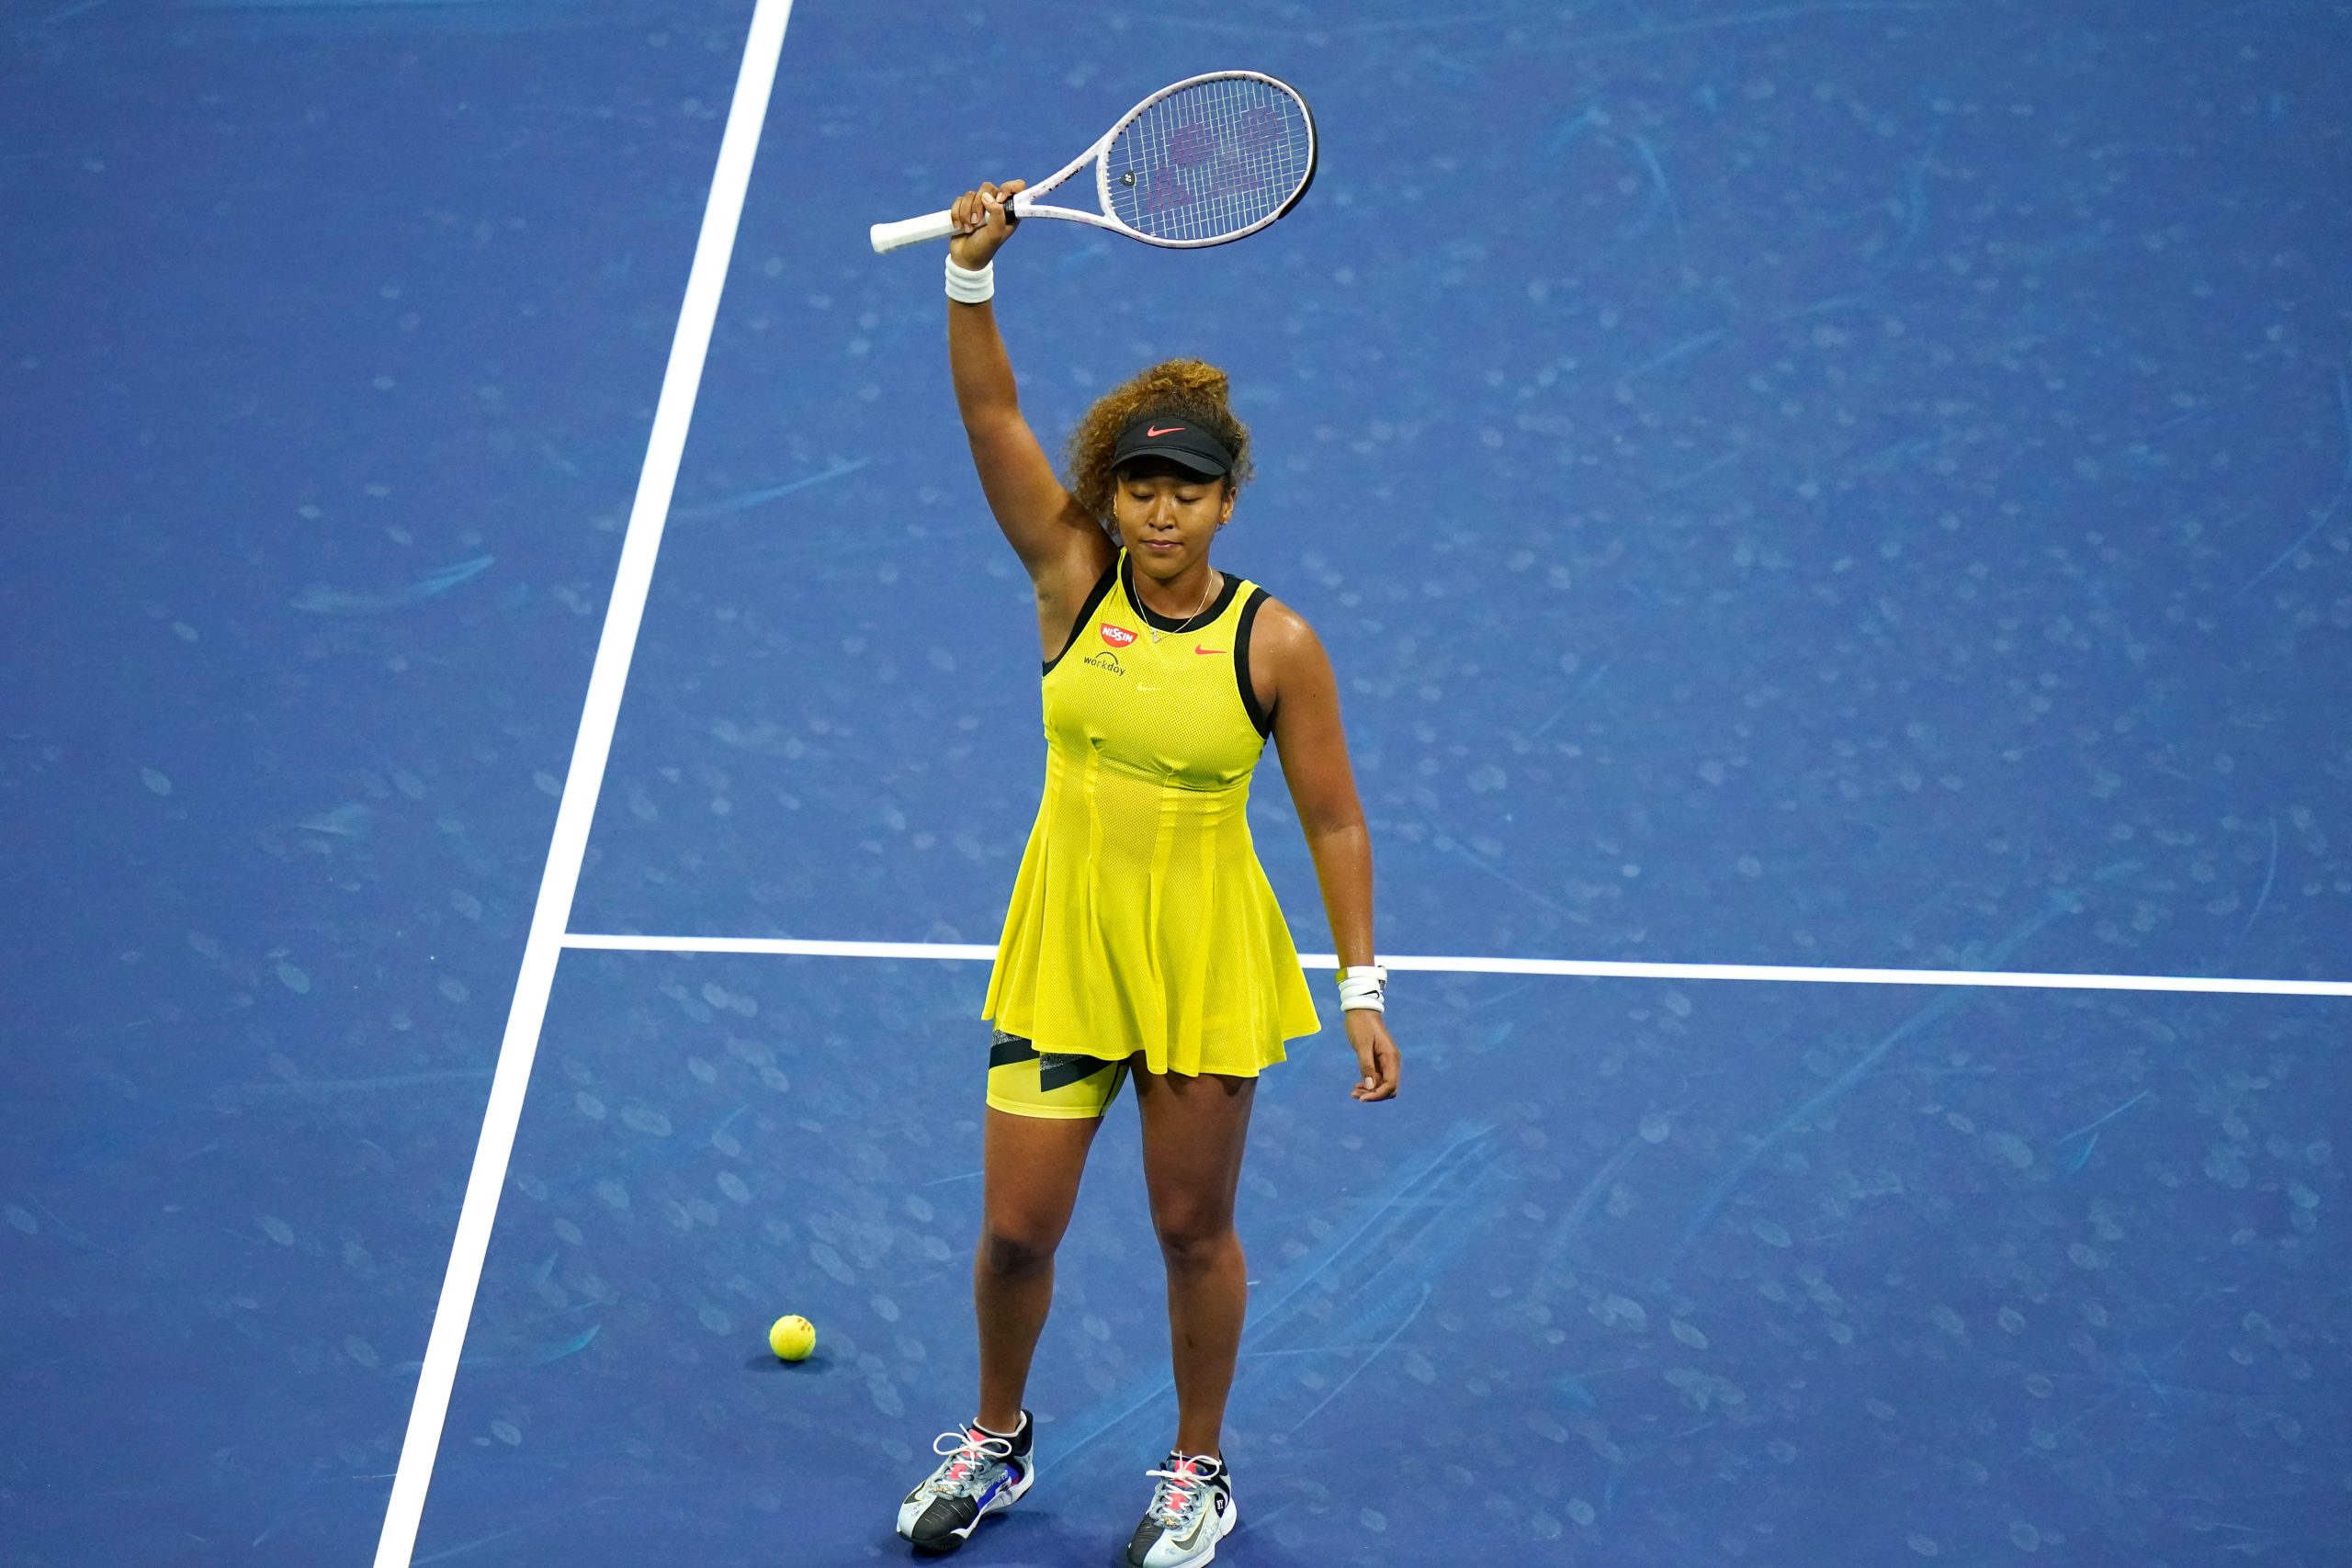 US Open: Naomi Osaka makes winning return to Grand Slam tennis, cruises to Round 2